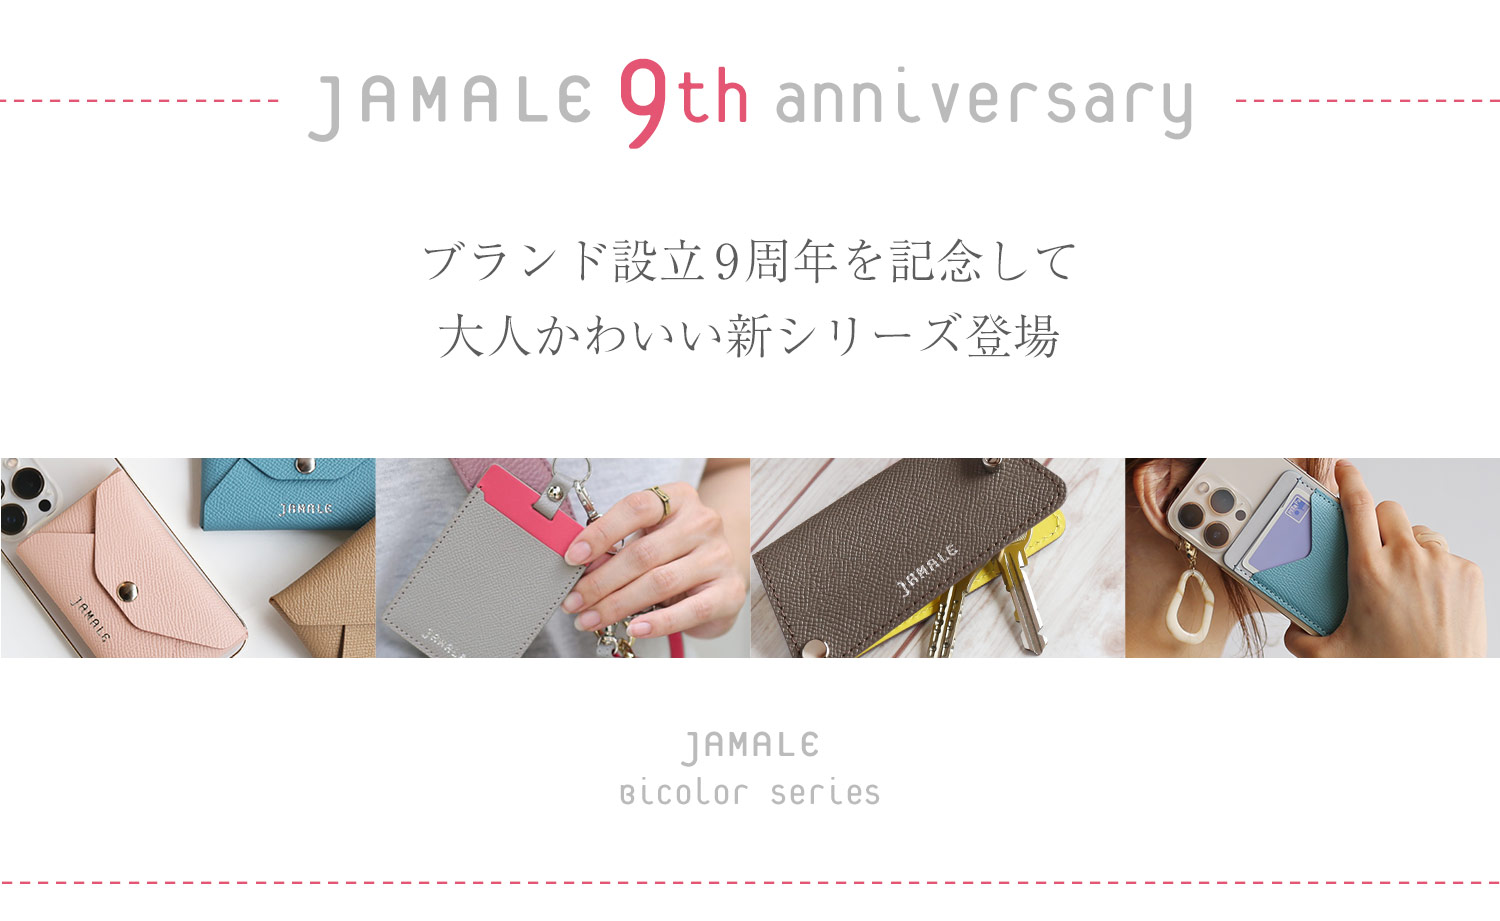 革小物 ブランド 日本製 jamale かわいい